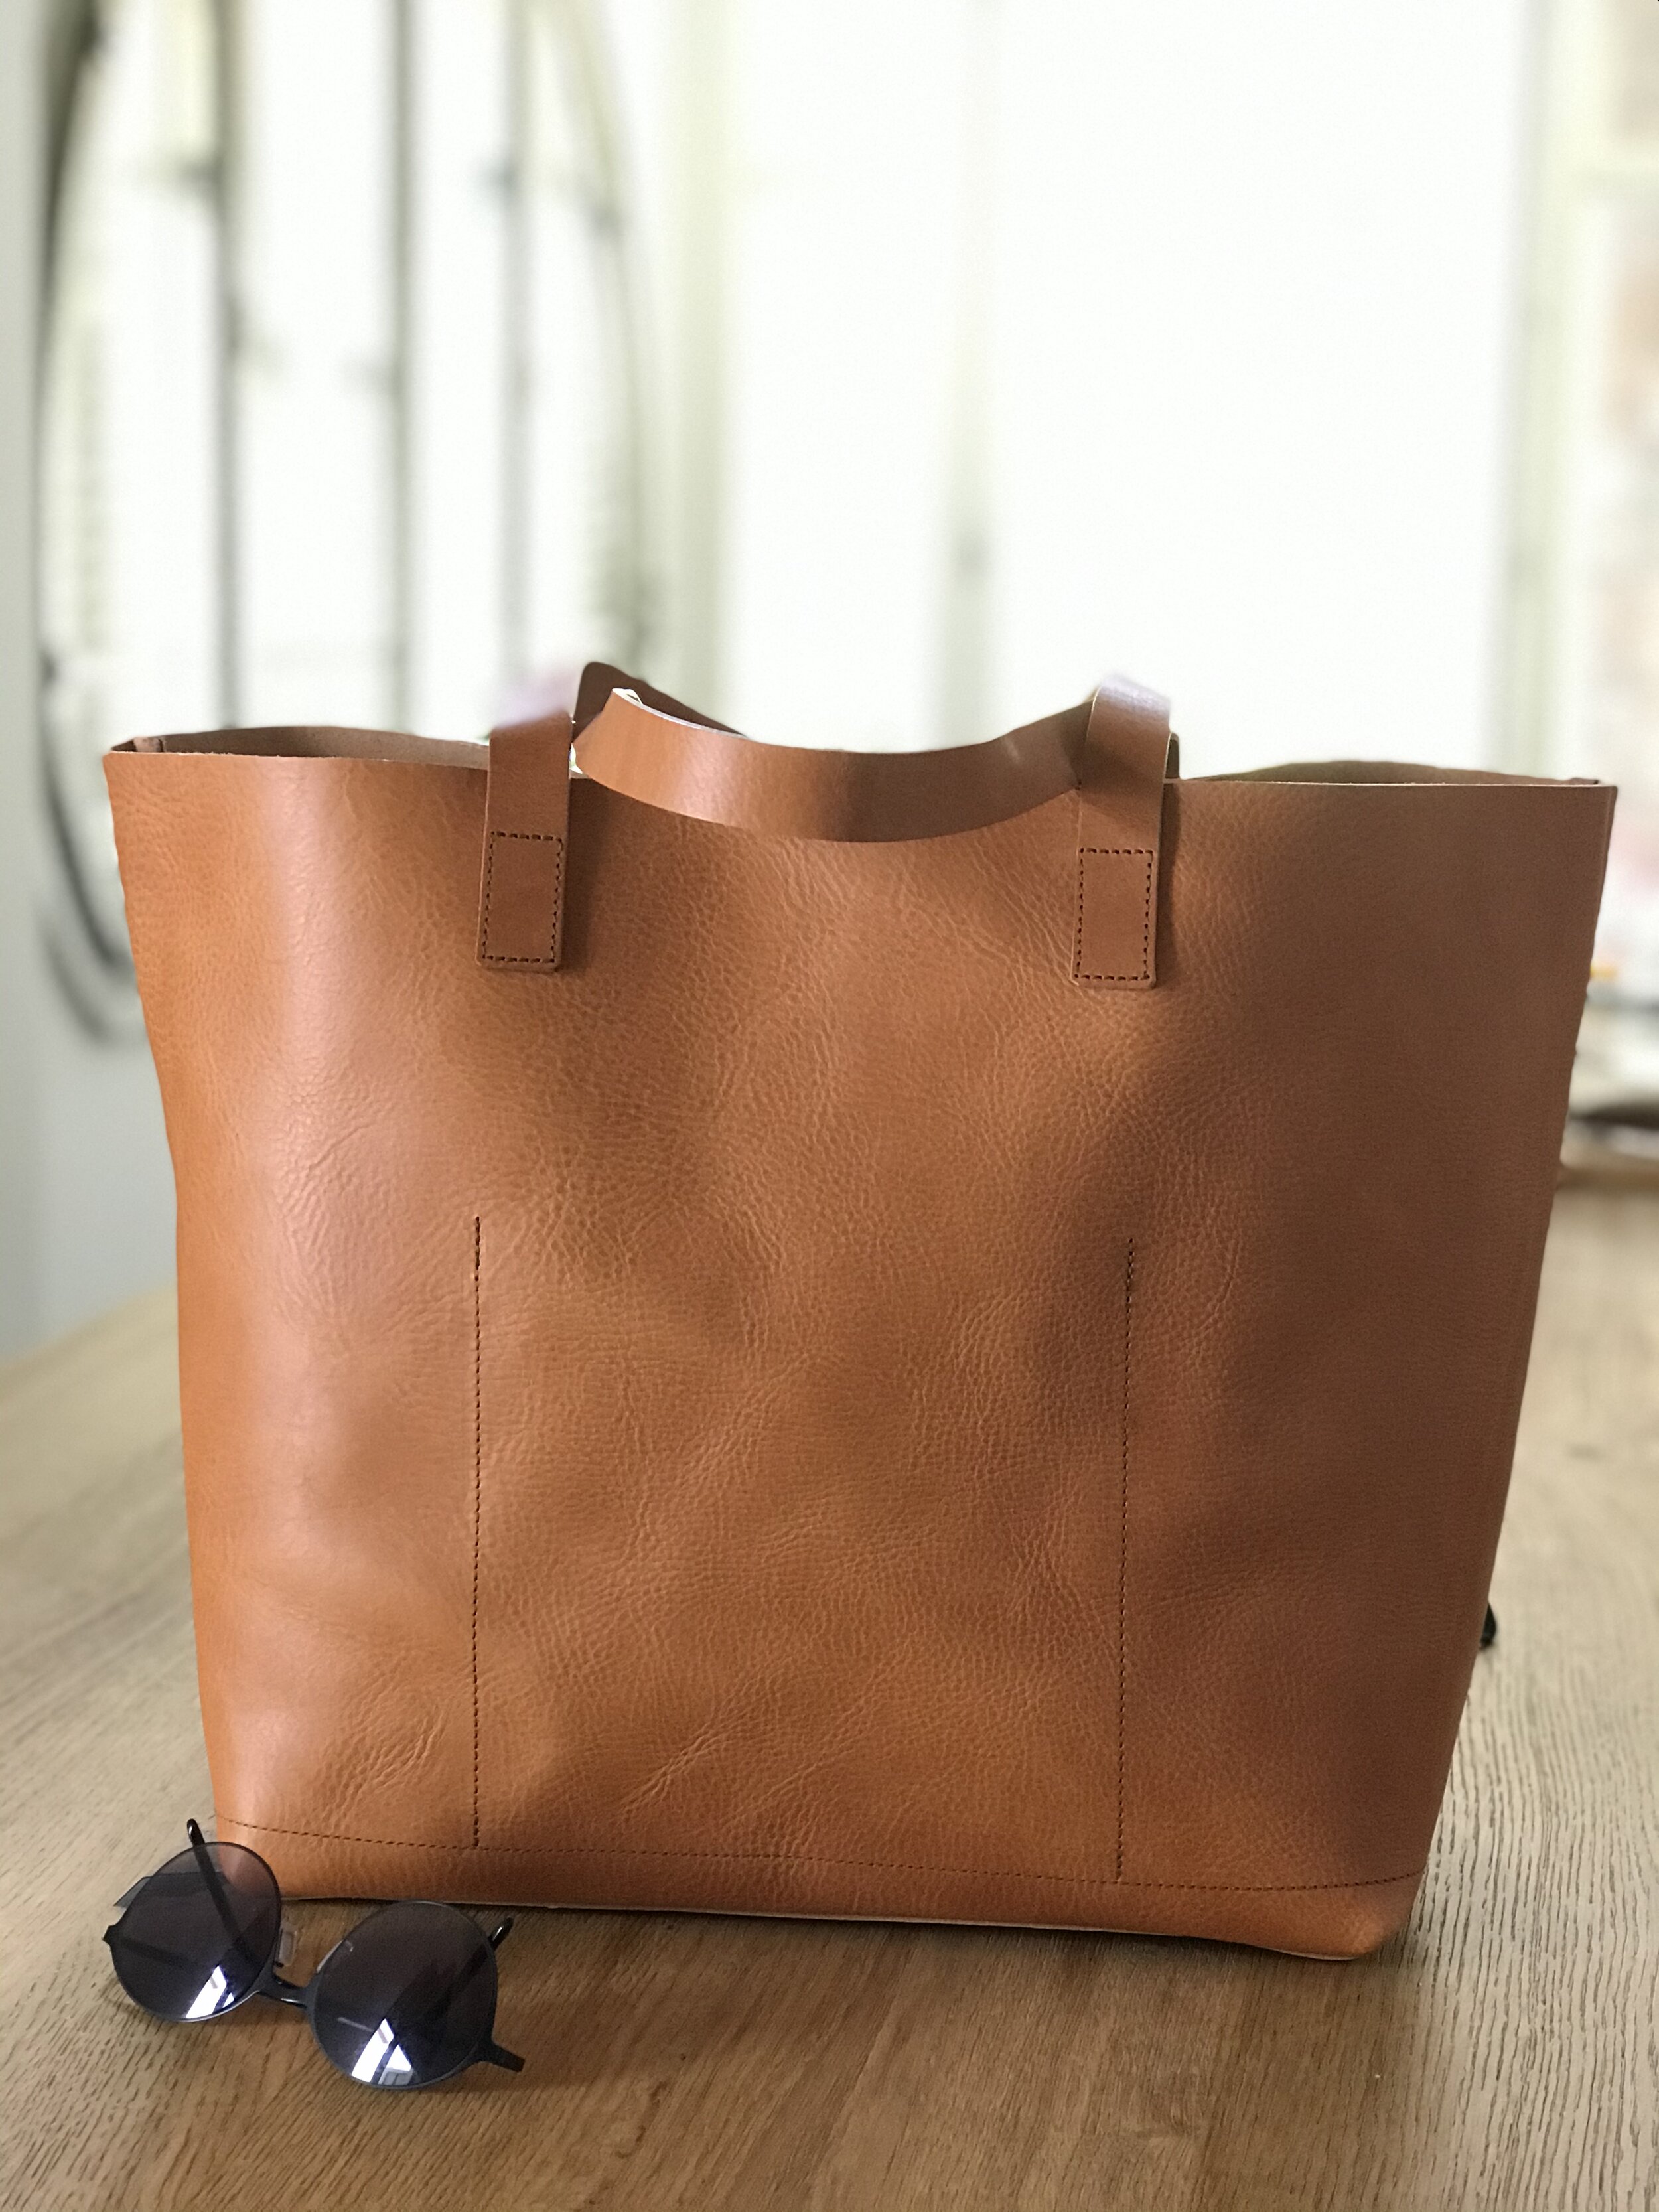 Oversized Tan multi compartment tote Bag